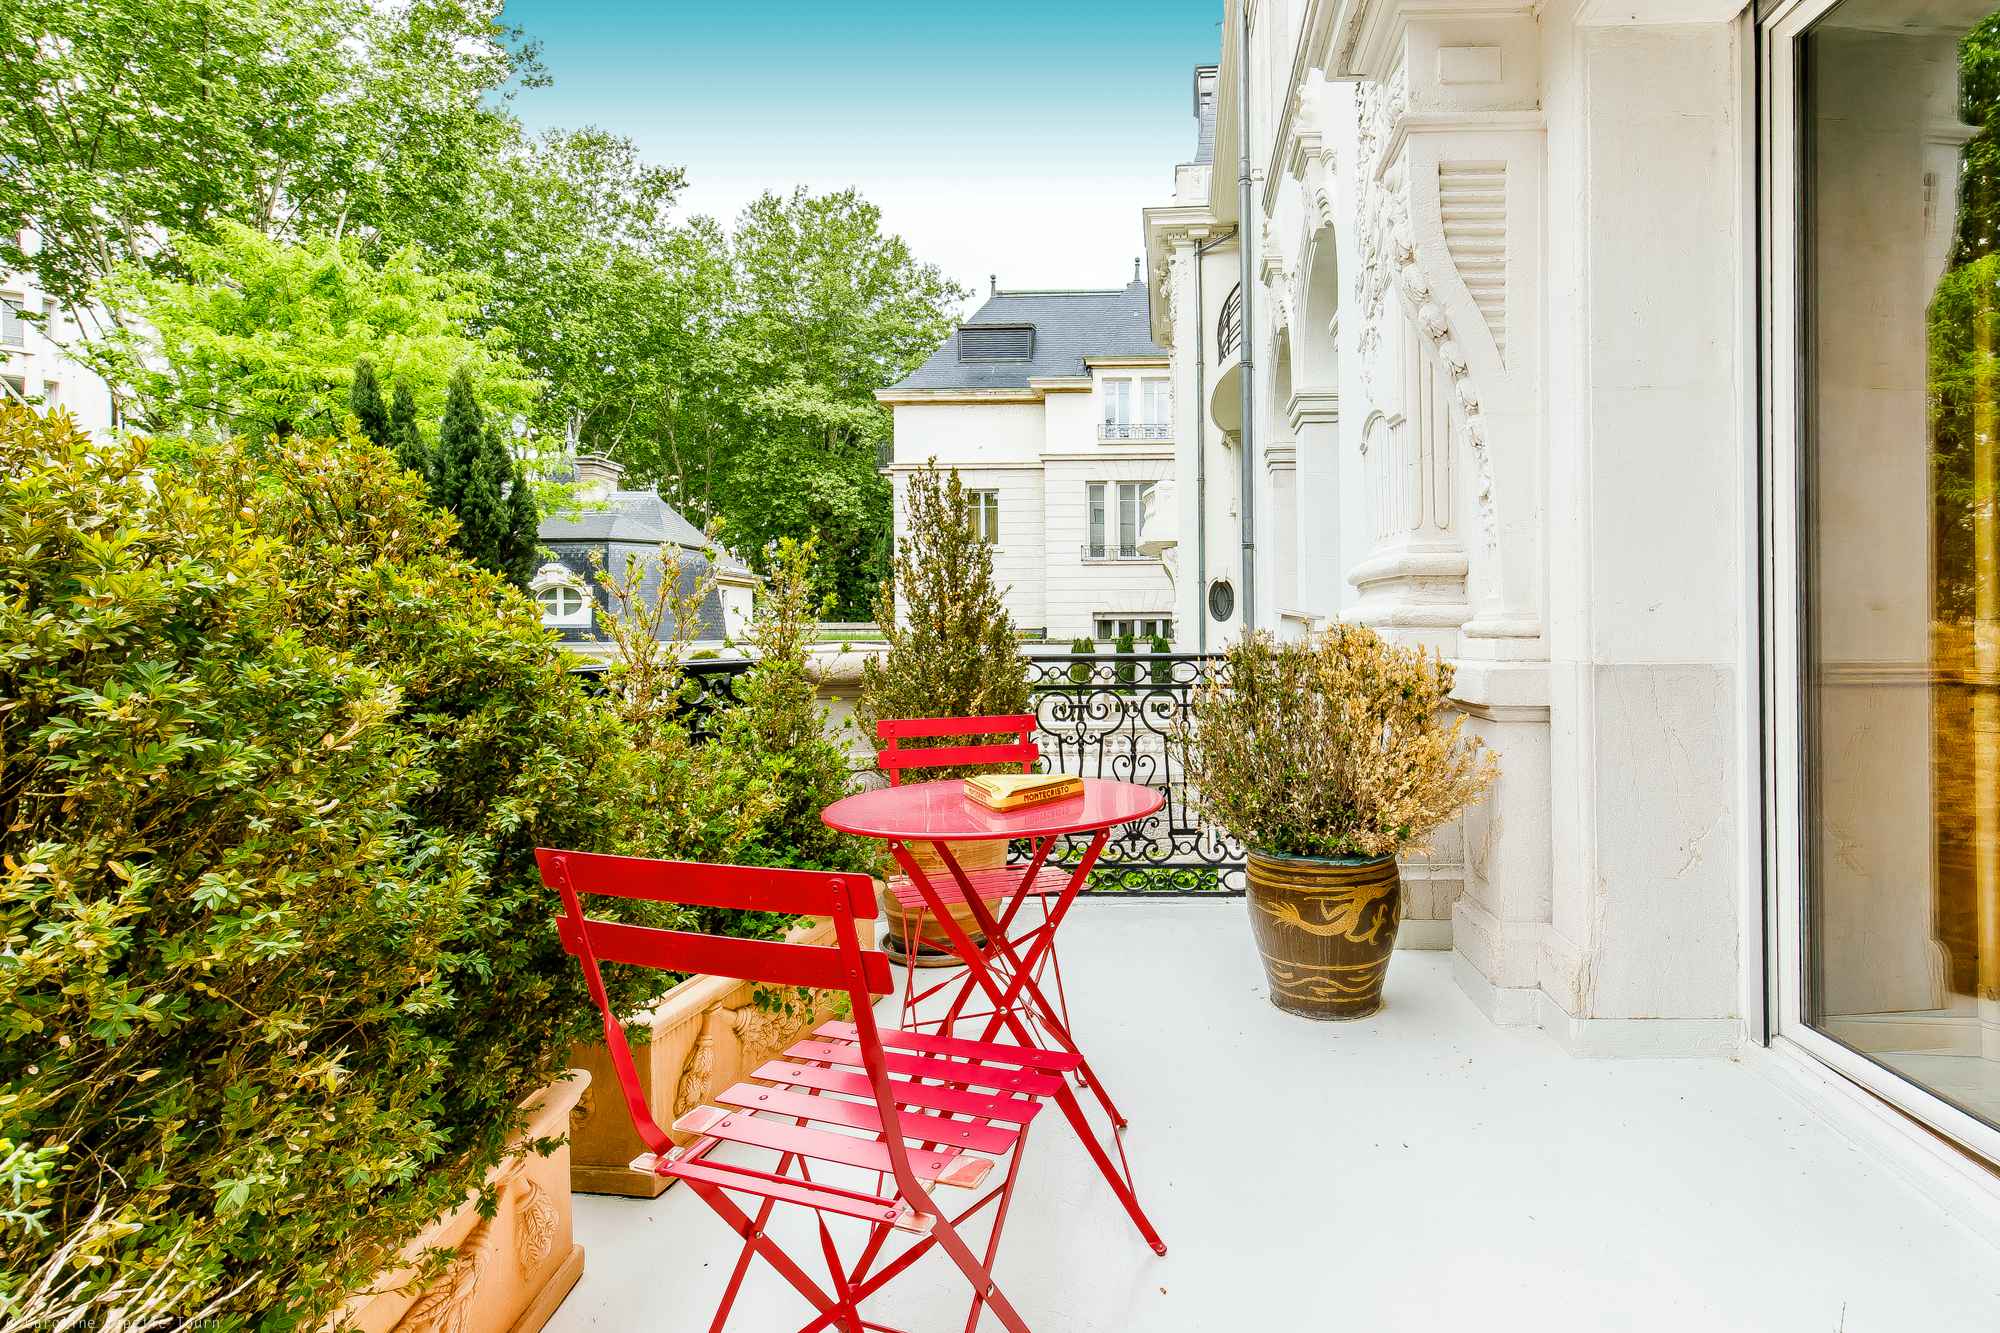 Appartement boulevard des belges lyon terrasse - Attribut alt par défaut.